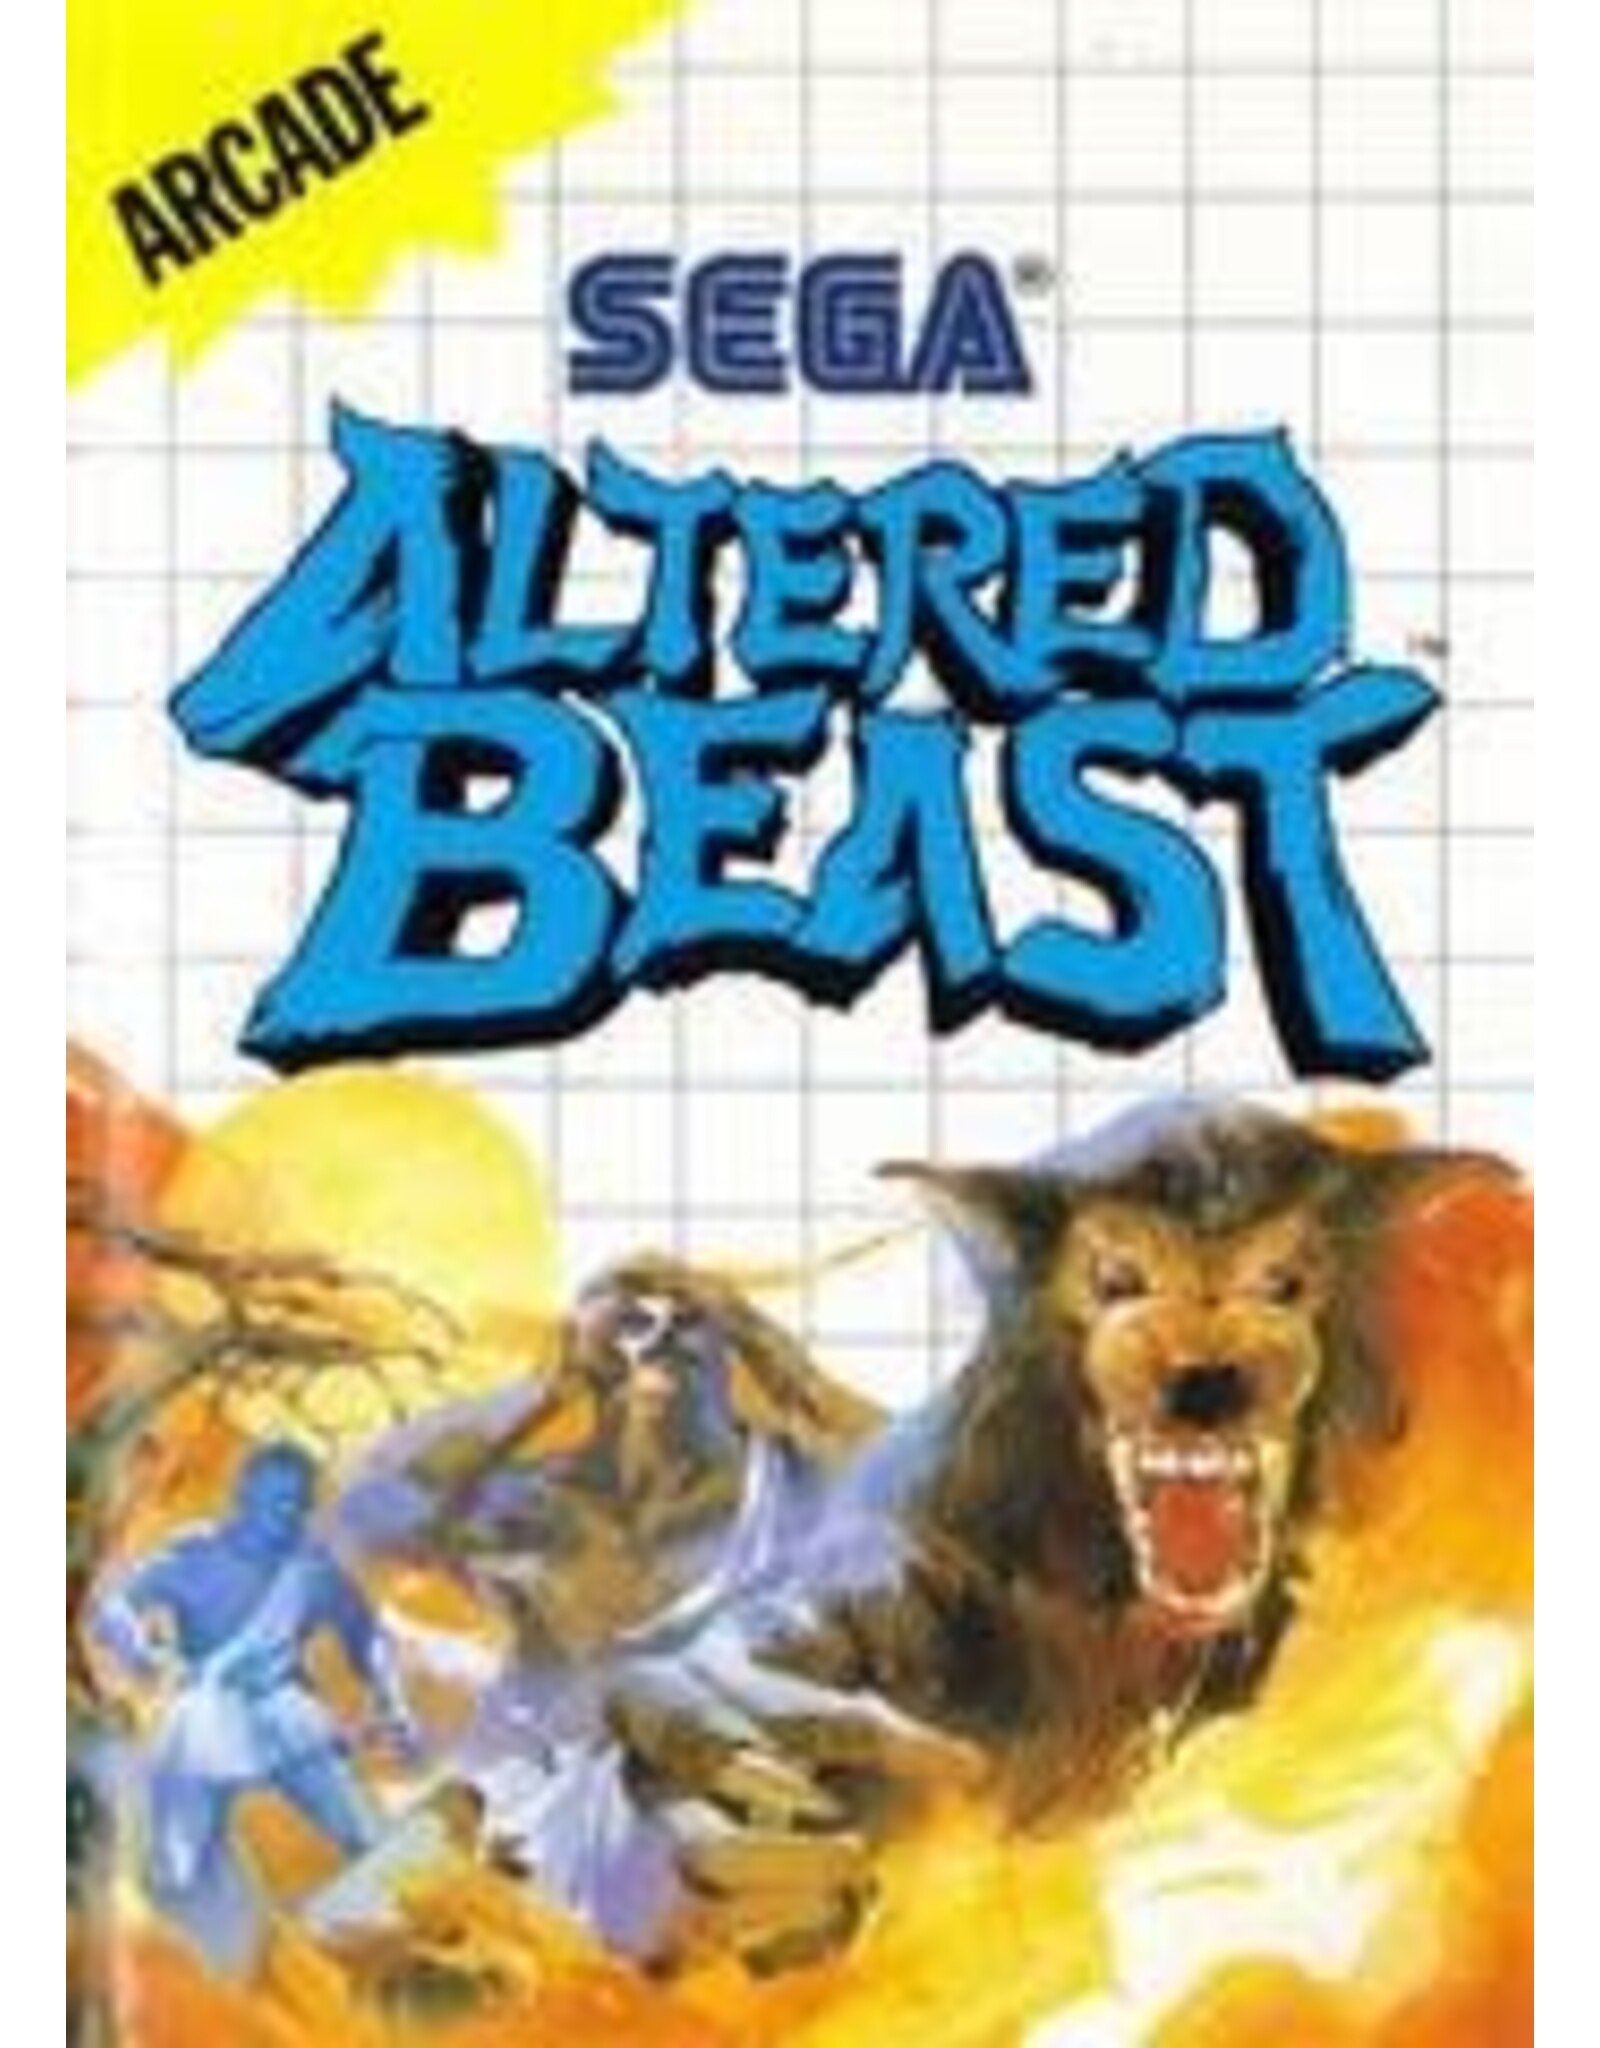 Sega Master System Altered Beast (CiB, Damaged Manual)